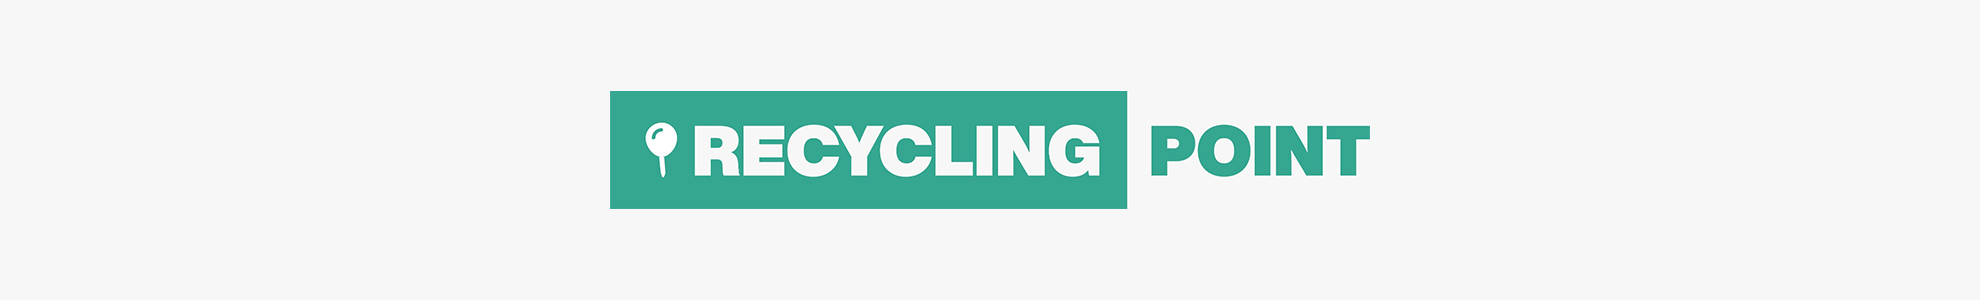 Nyga Recycling GmbH Recycling